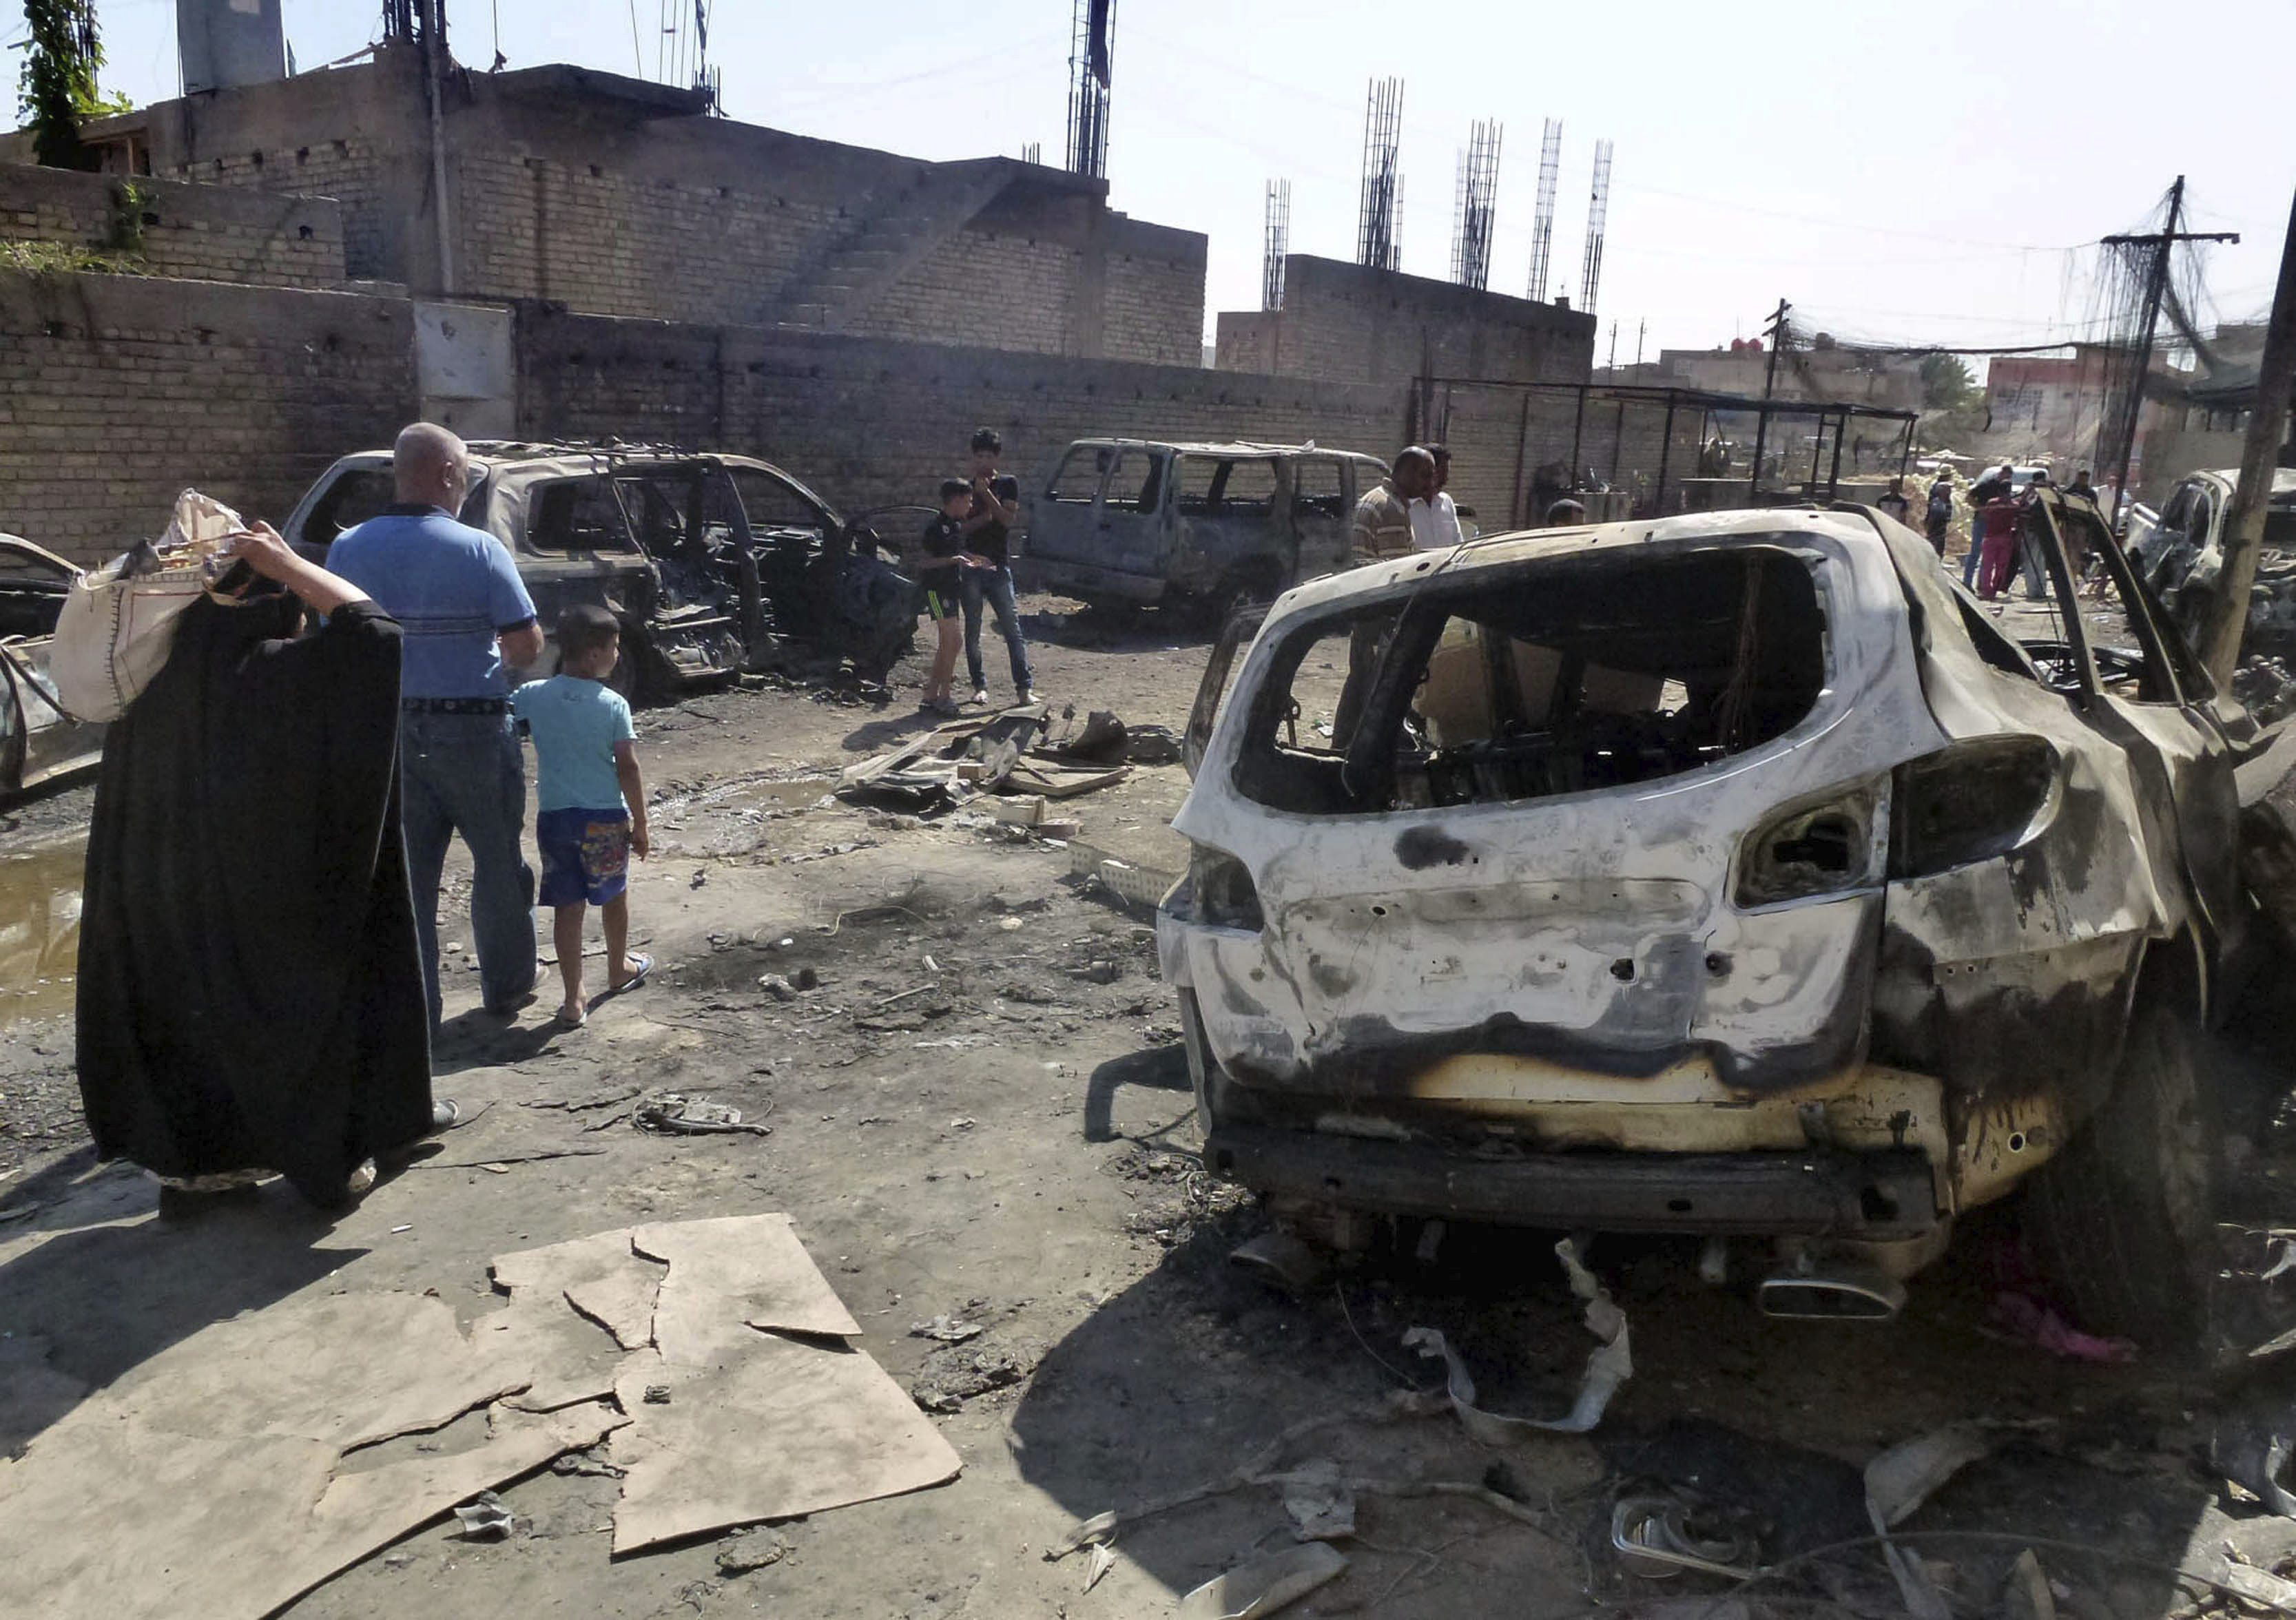 964 muertos en octubre en Irak, uno de los meses más sangrientos desde 2008